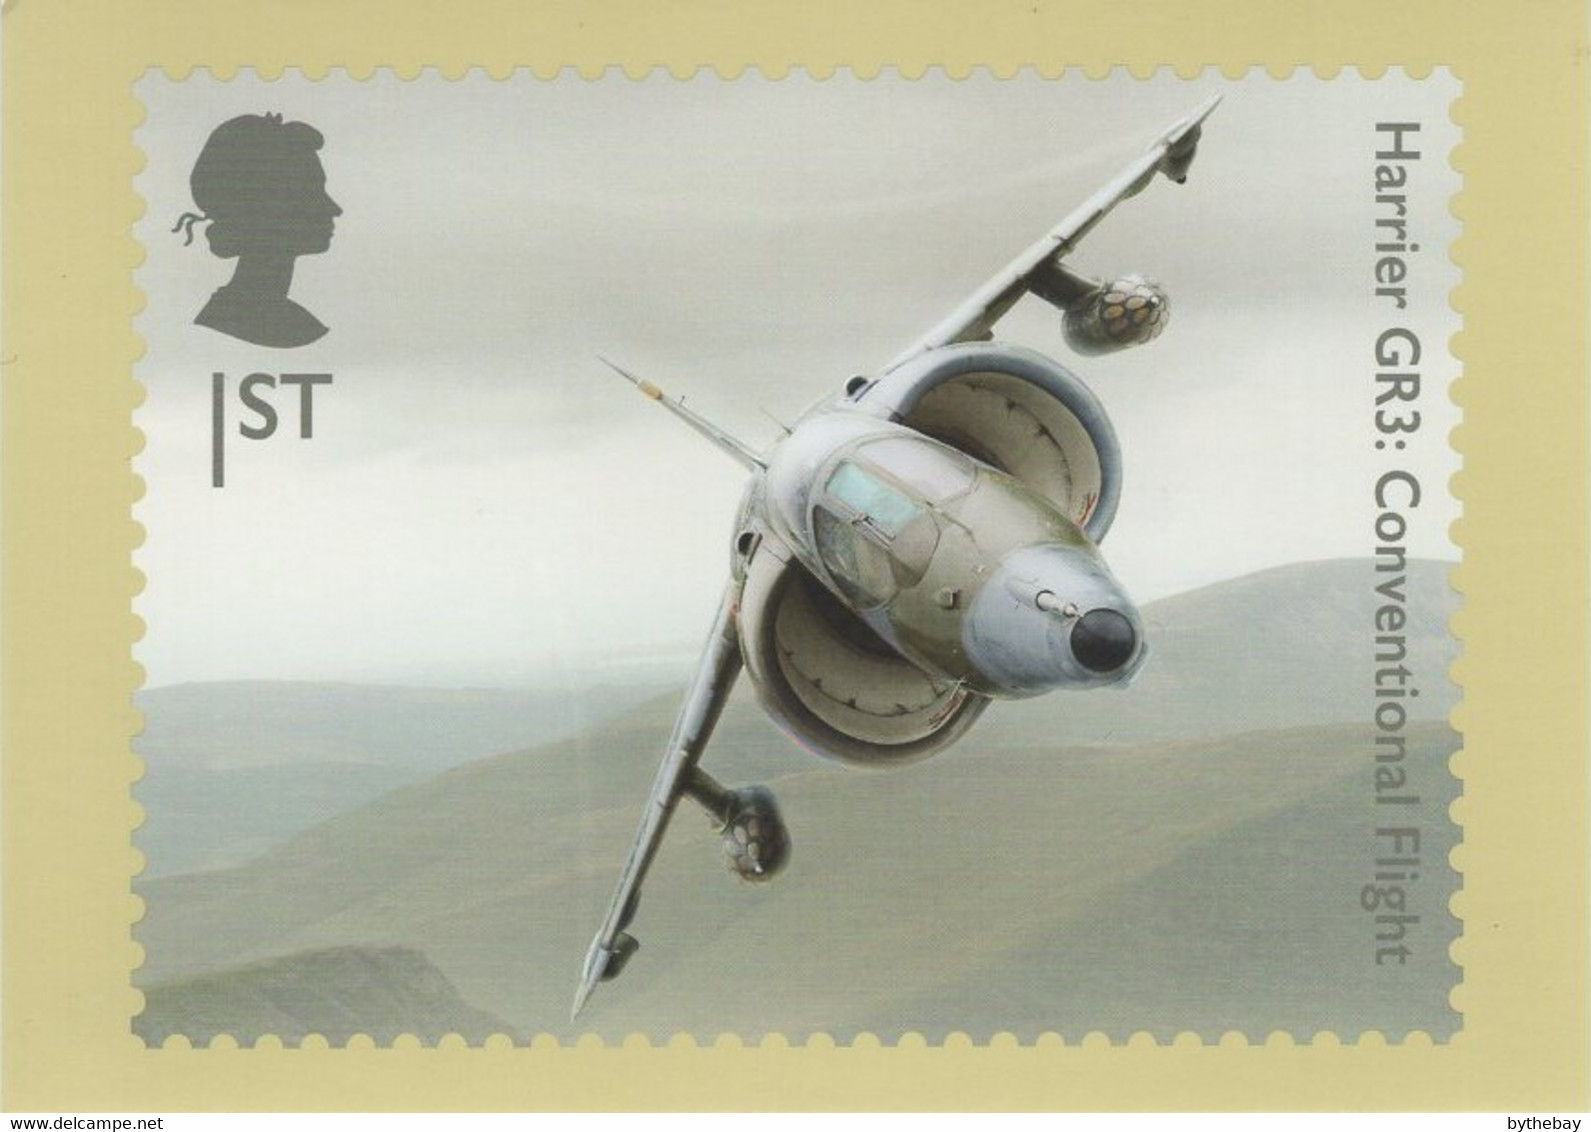 Great Britain 2019 PHQ Card Sc 3845b 1st Harrier GR3 Convential Flight - PHQ Karten